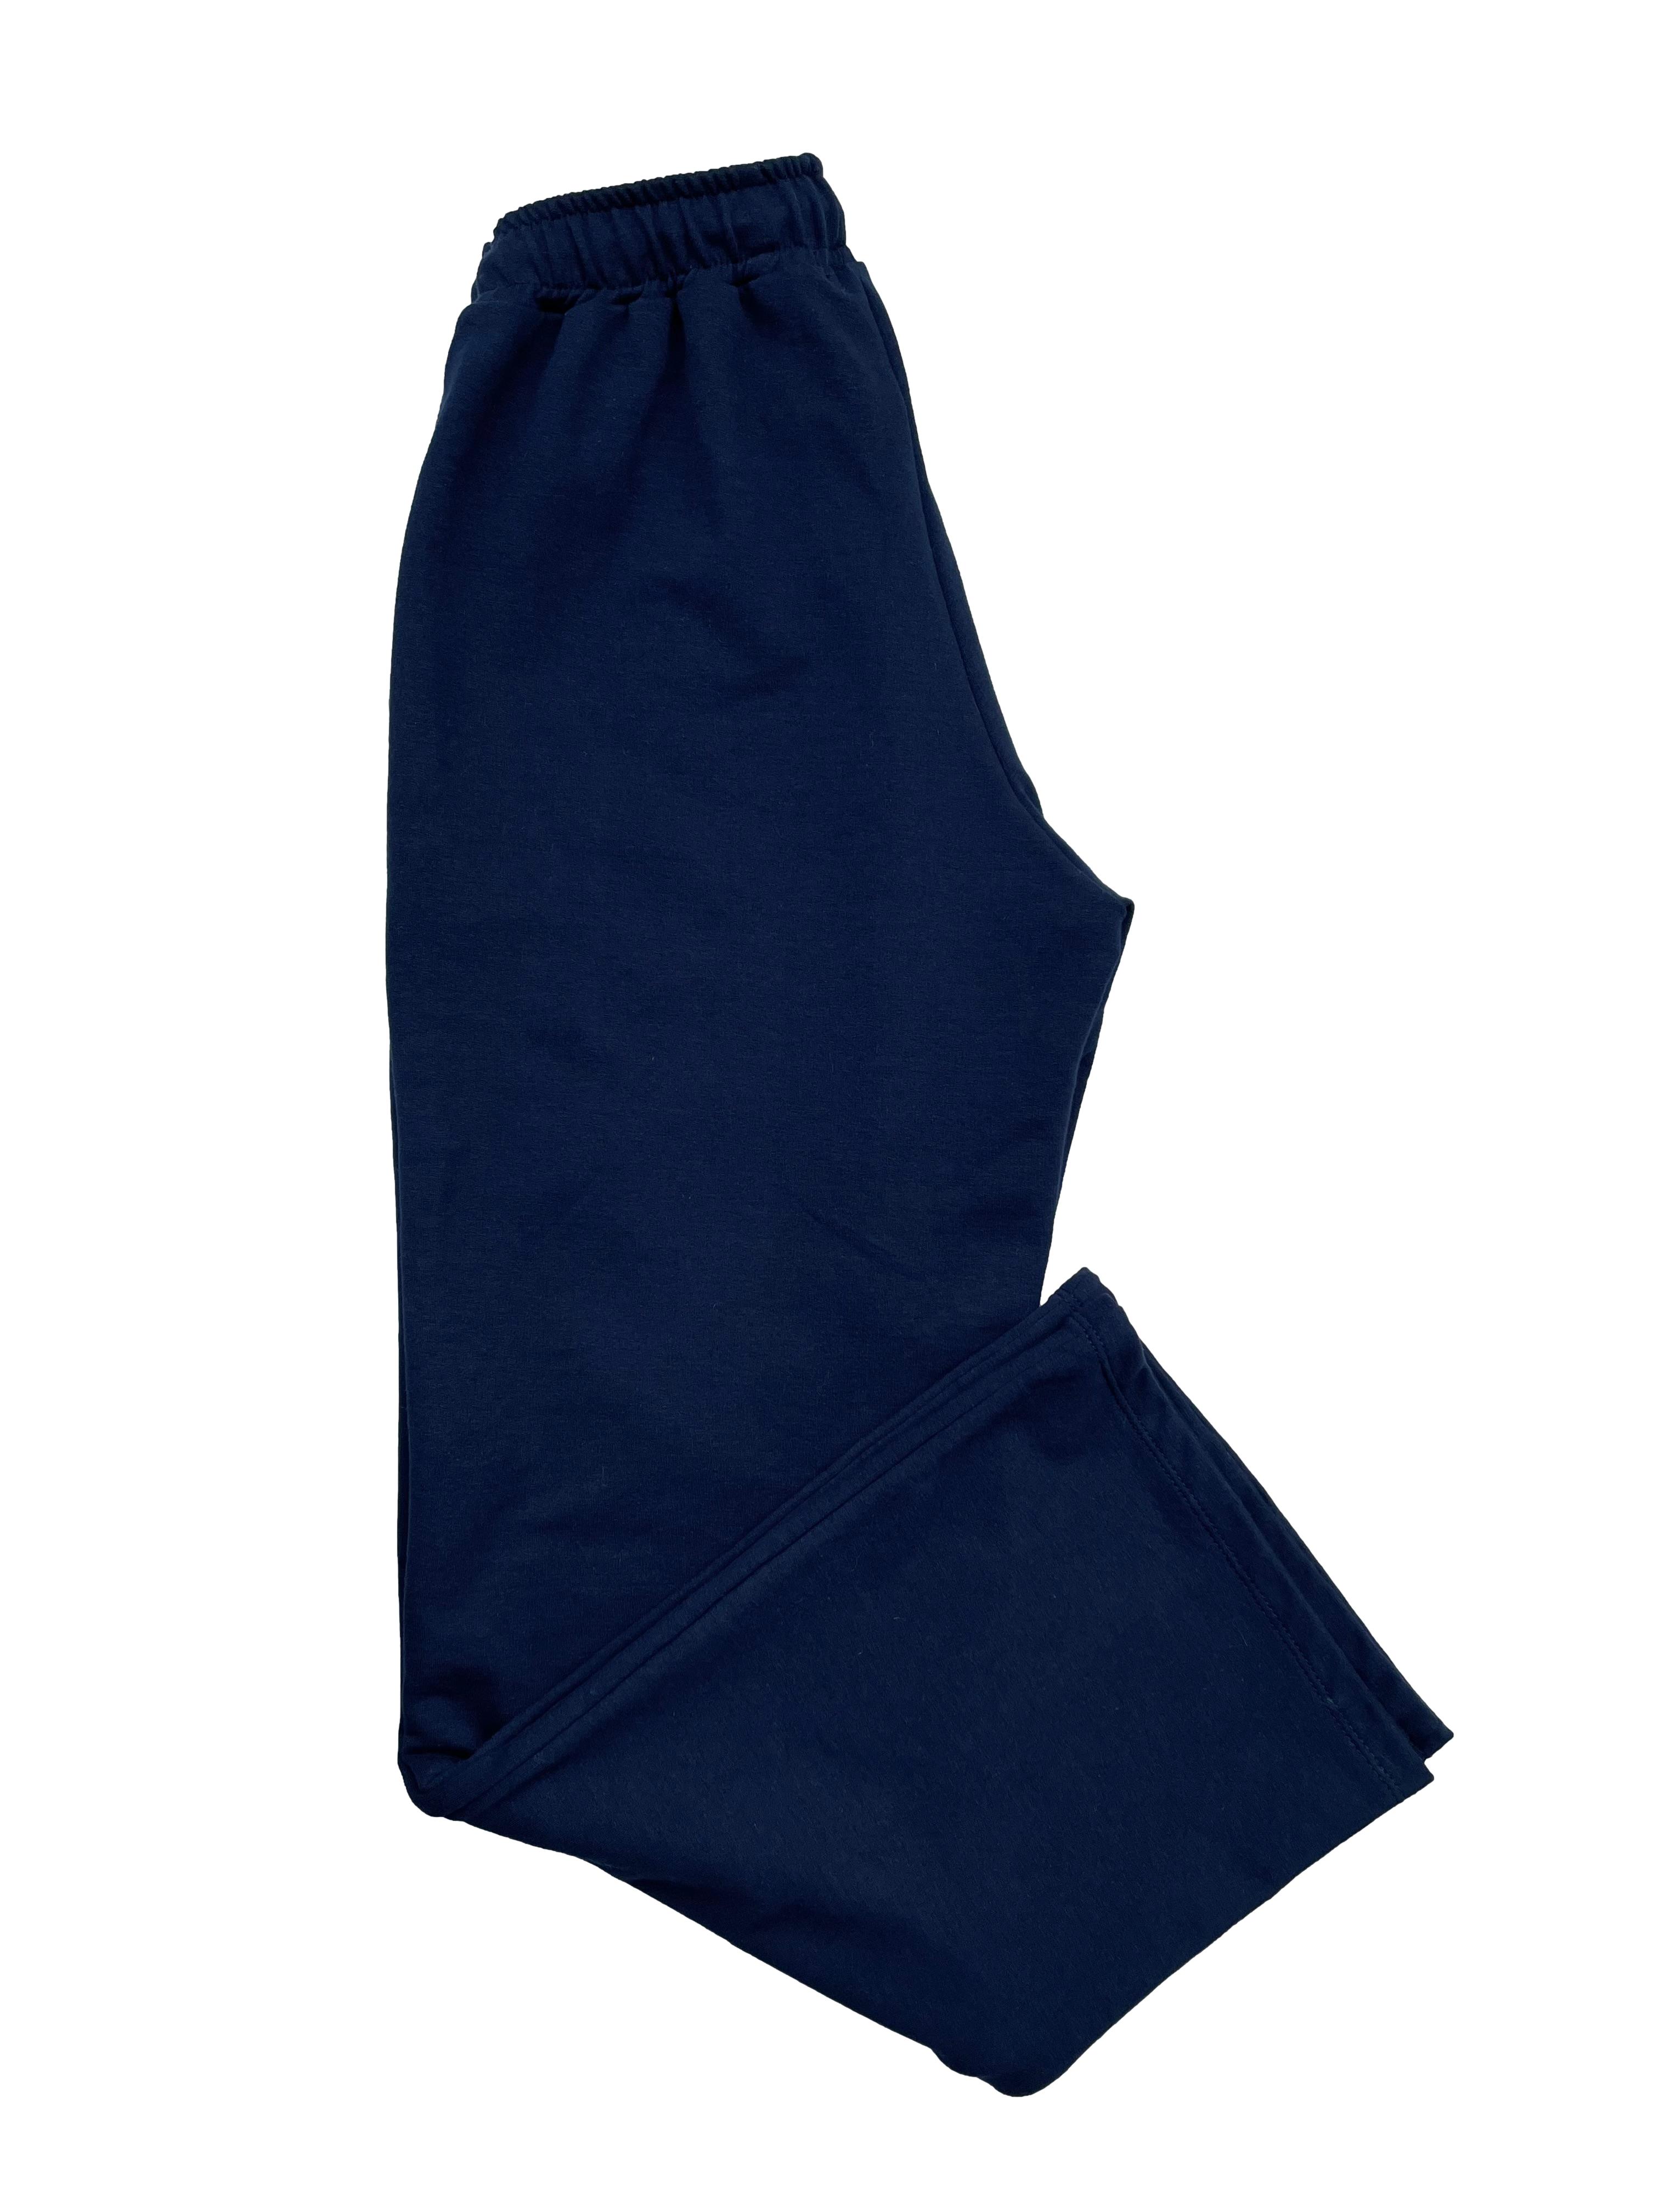 Pantalón recto de franela azul marino, pretina elástica con cordones y bolsillos frontales. Cintura 66cm sin estirar, Largo 96cm.